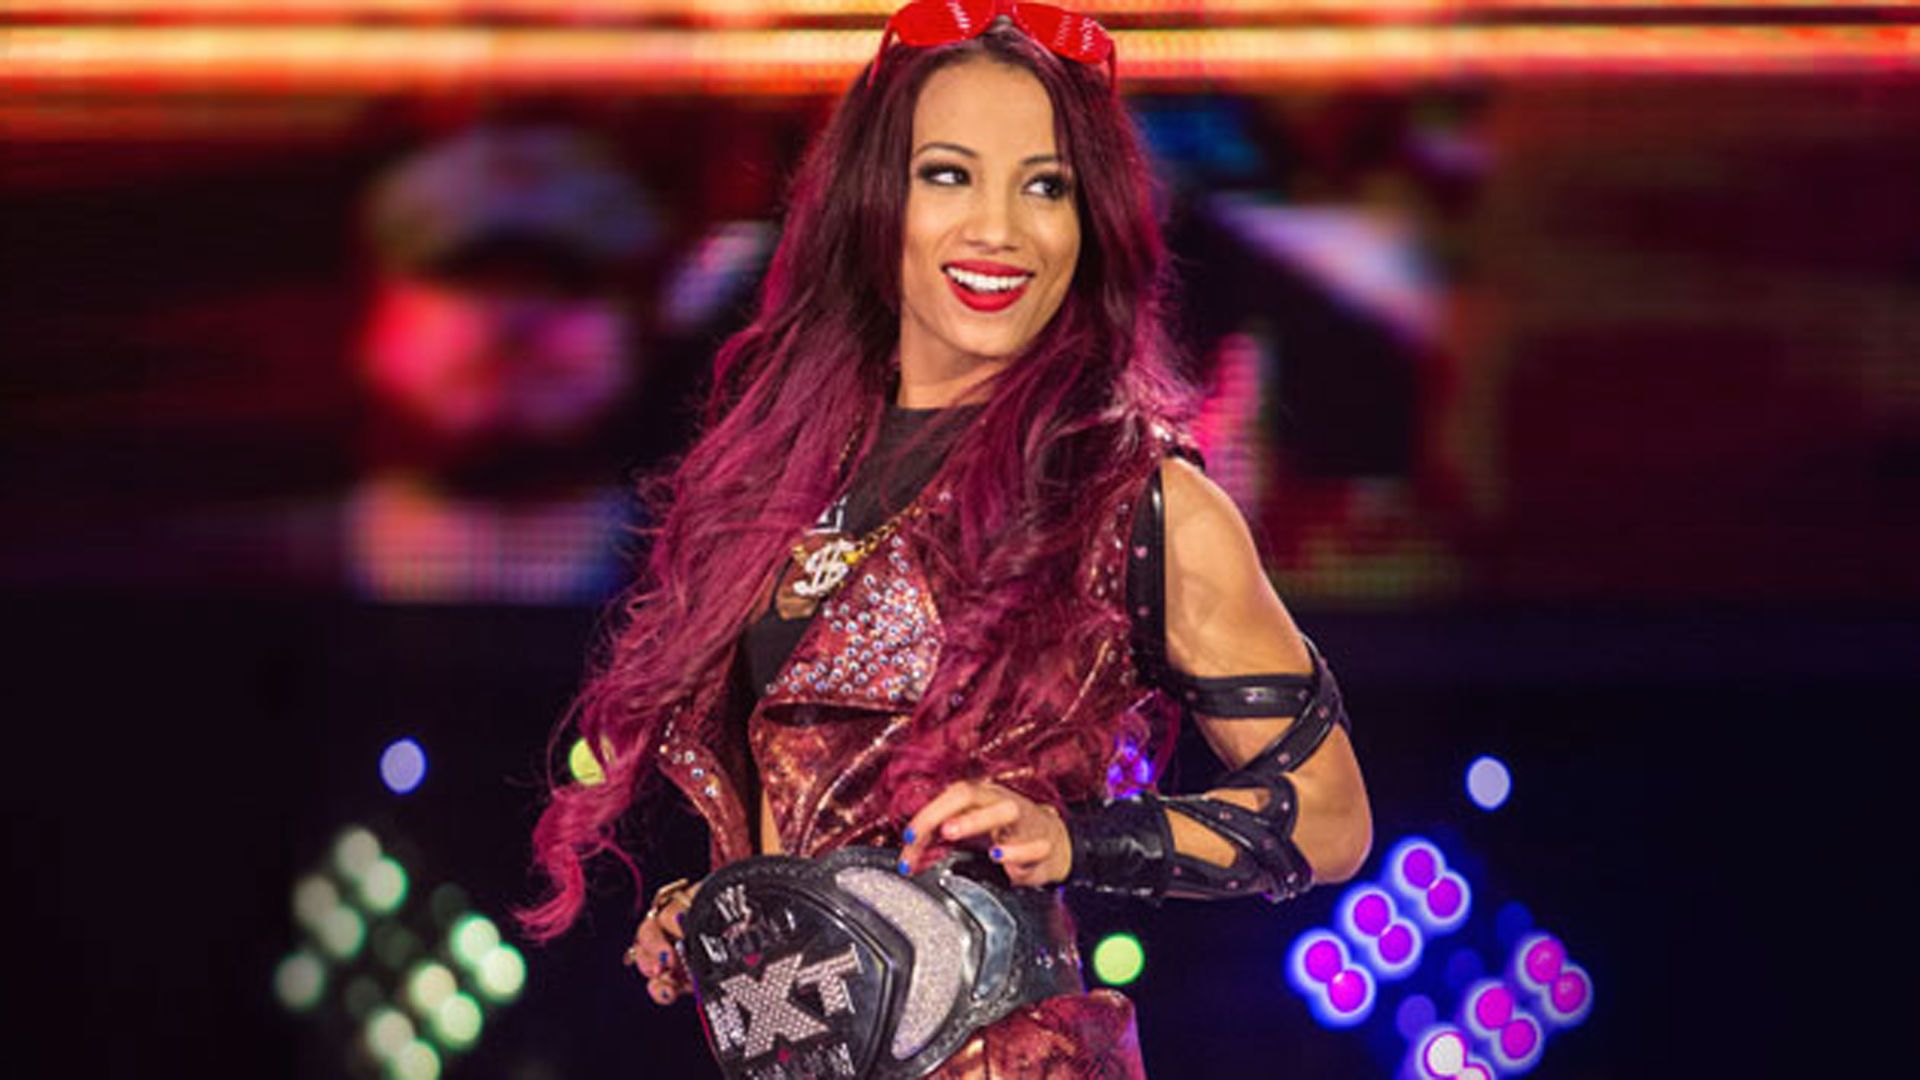 Sasha Banks as NXT Champion